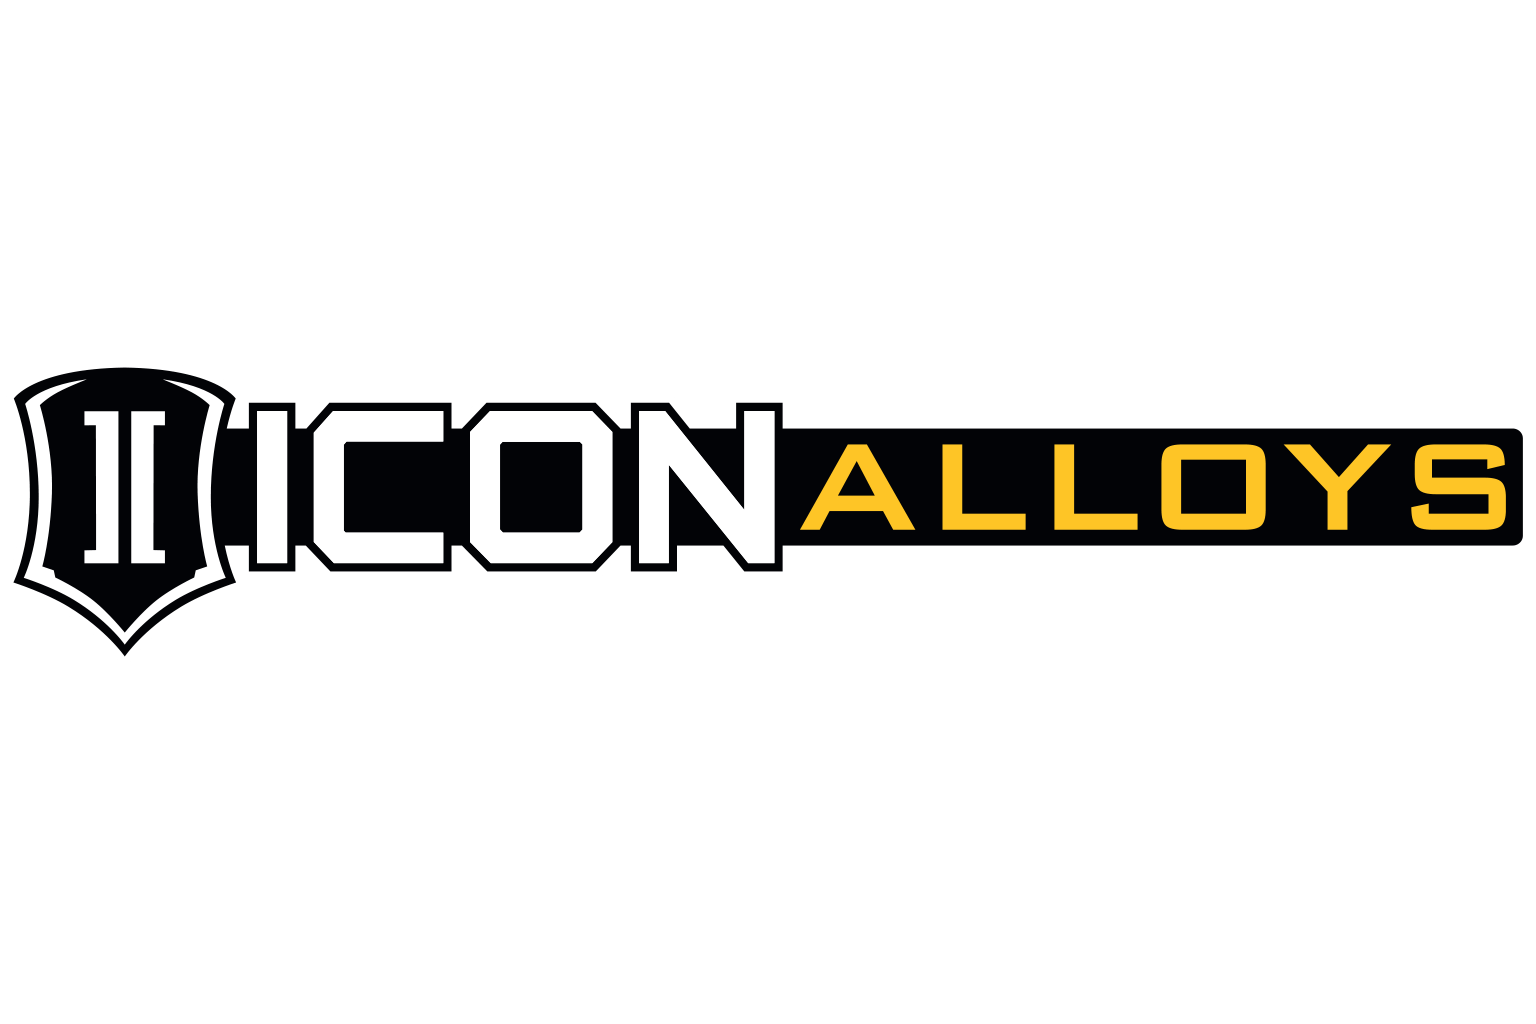 ICON Alloys